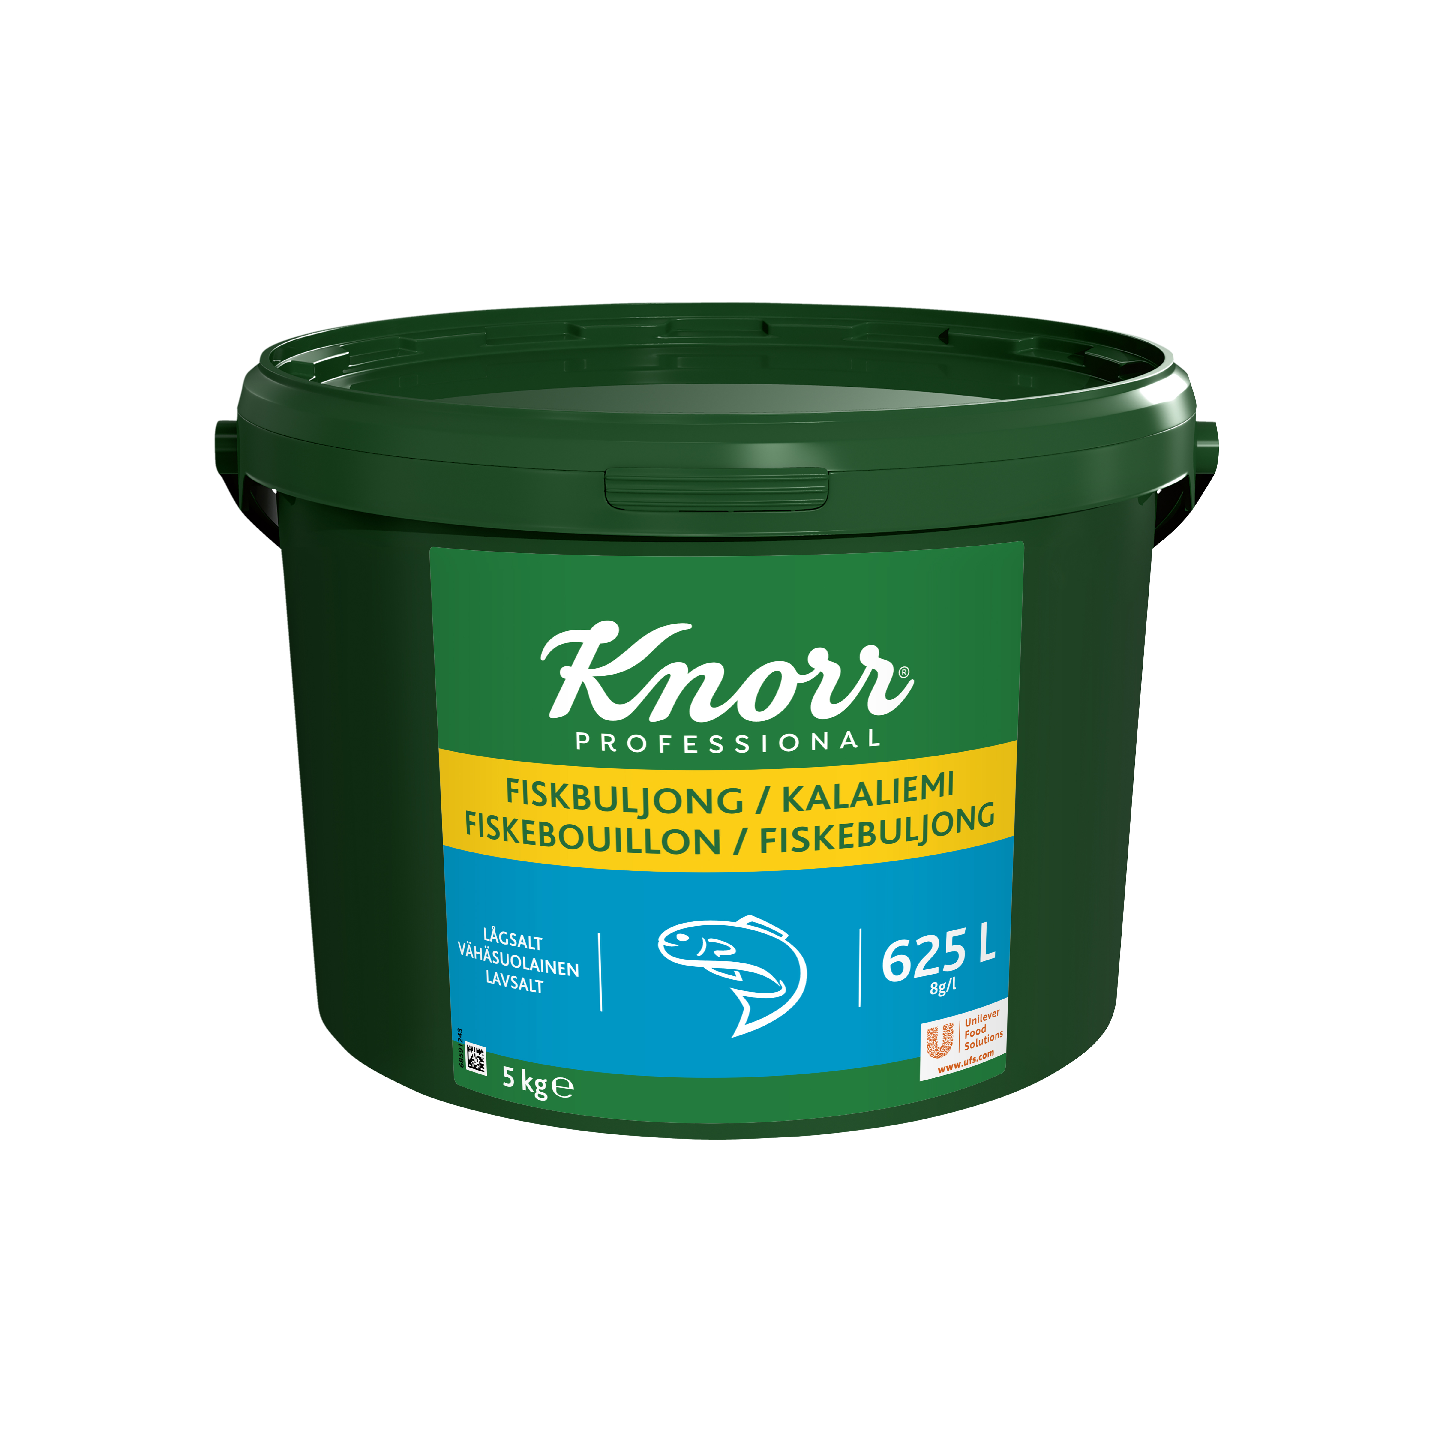 Knorr kalaliemi vähäsuolainen 5kg/625l